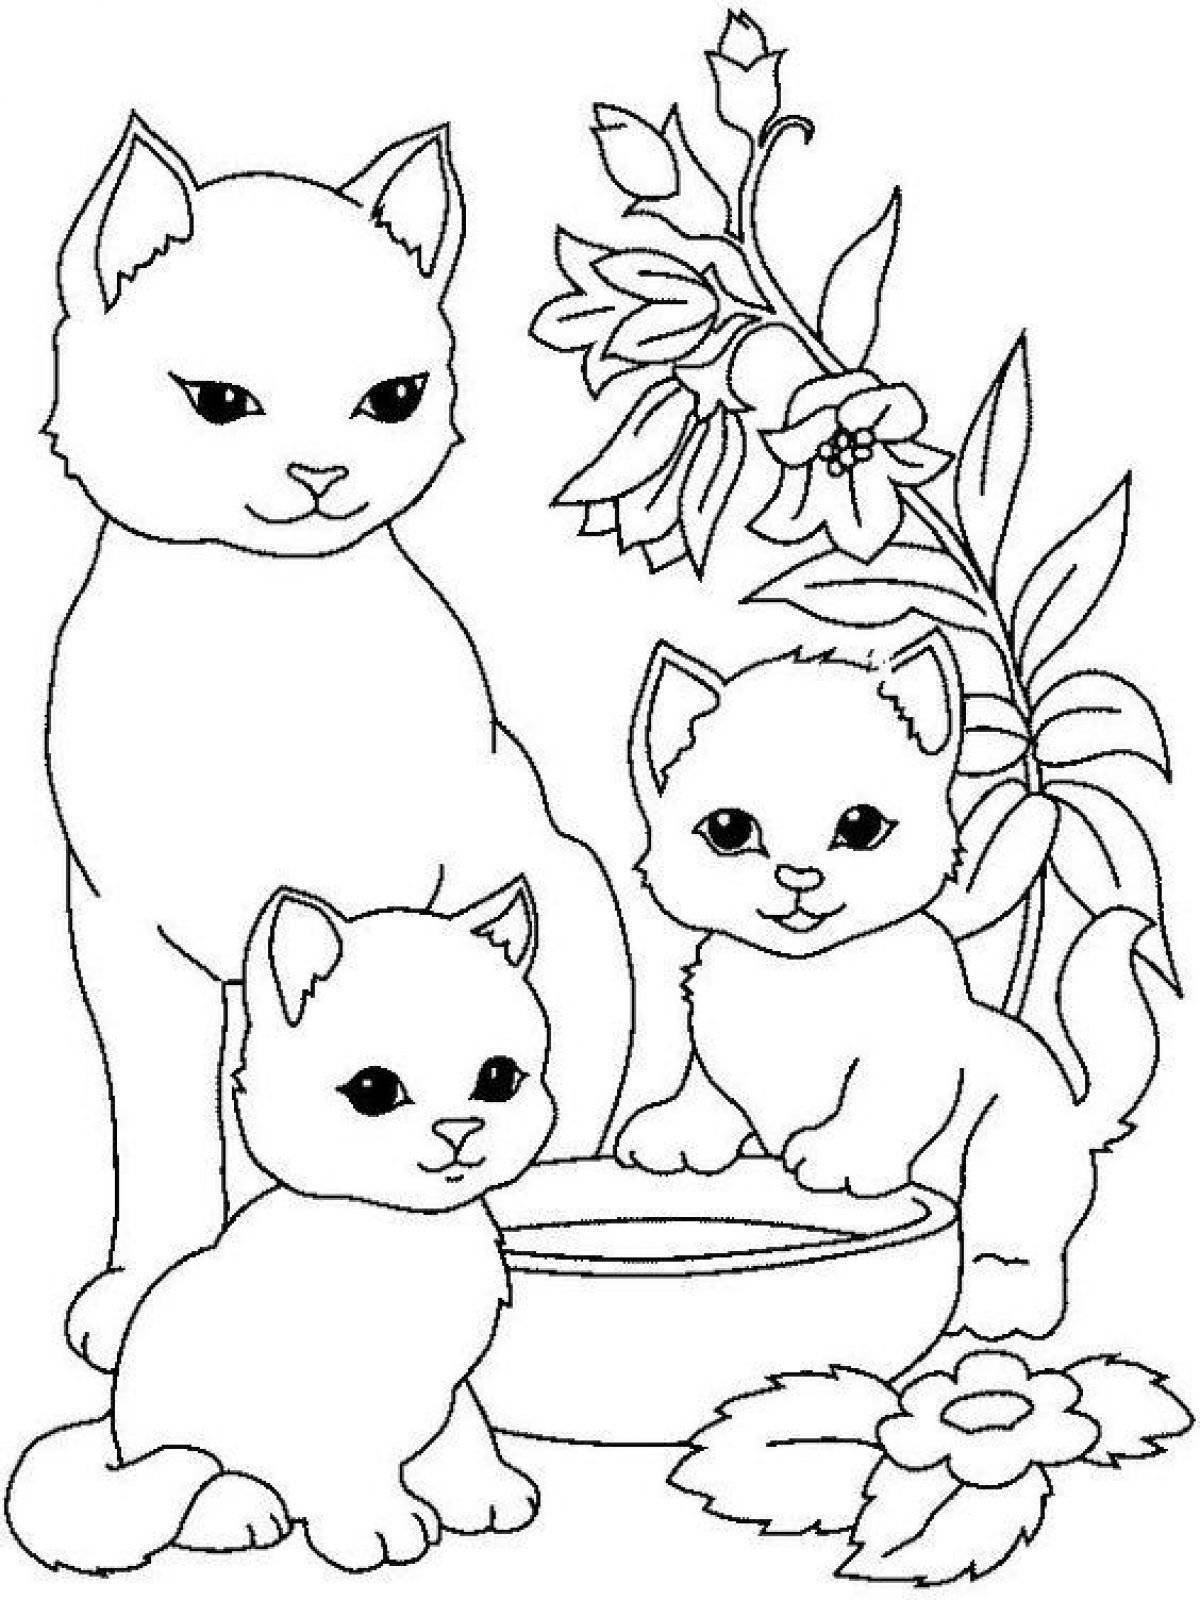 Fancy cat coloring